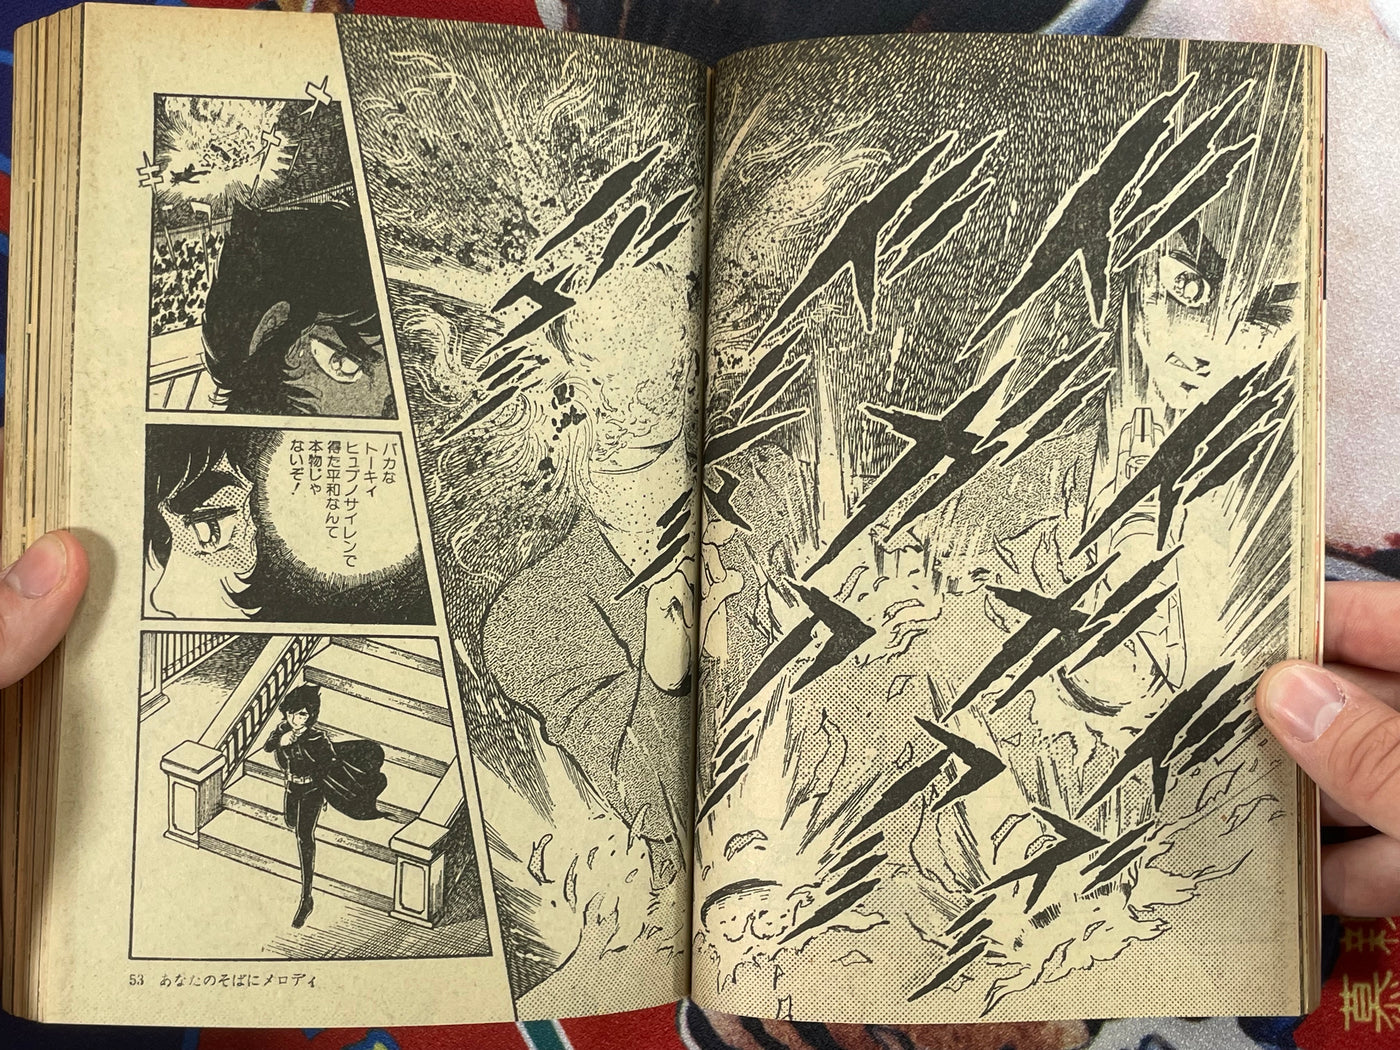 SF Manga Kyosaku Big Collection Magazine Part 11 - 7/1981